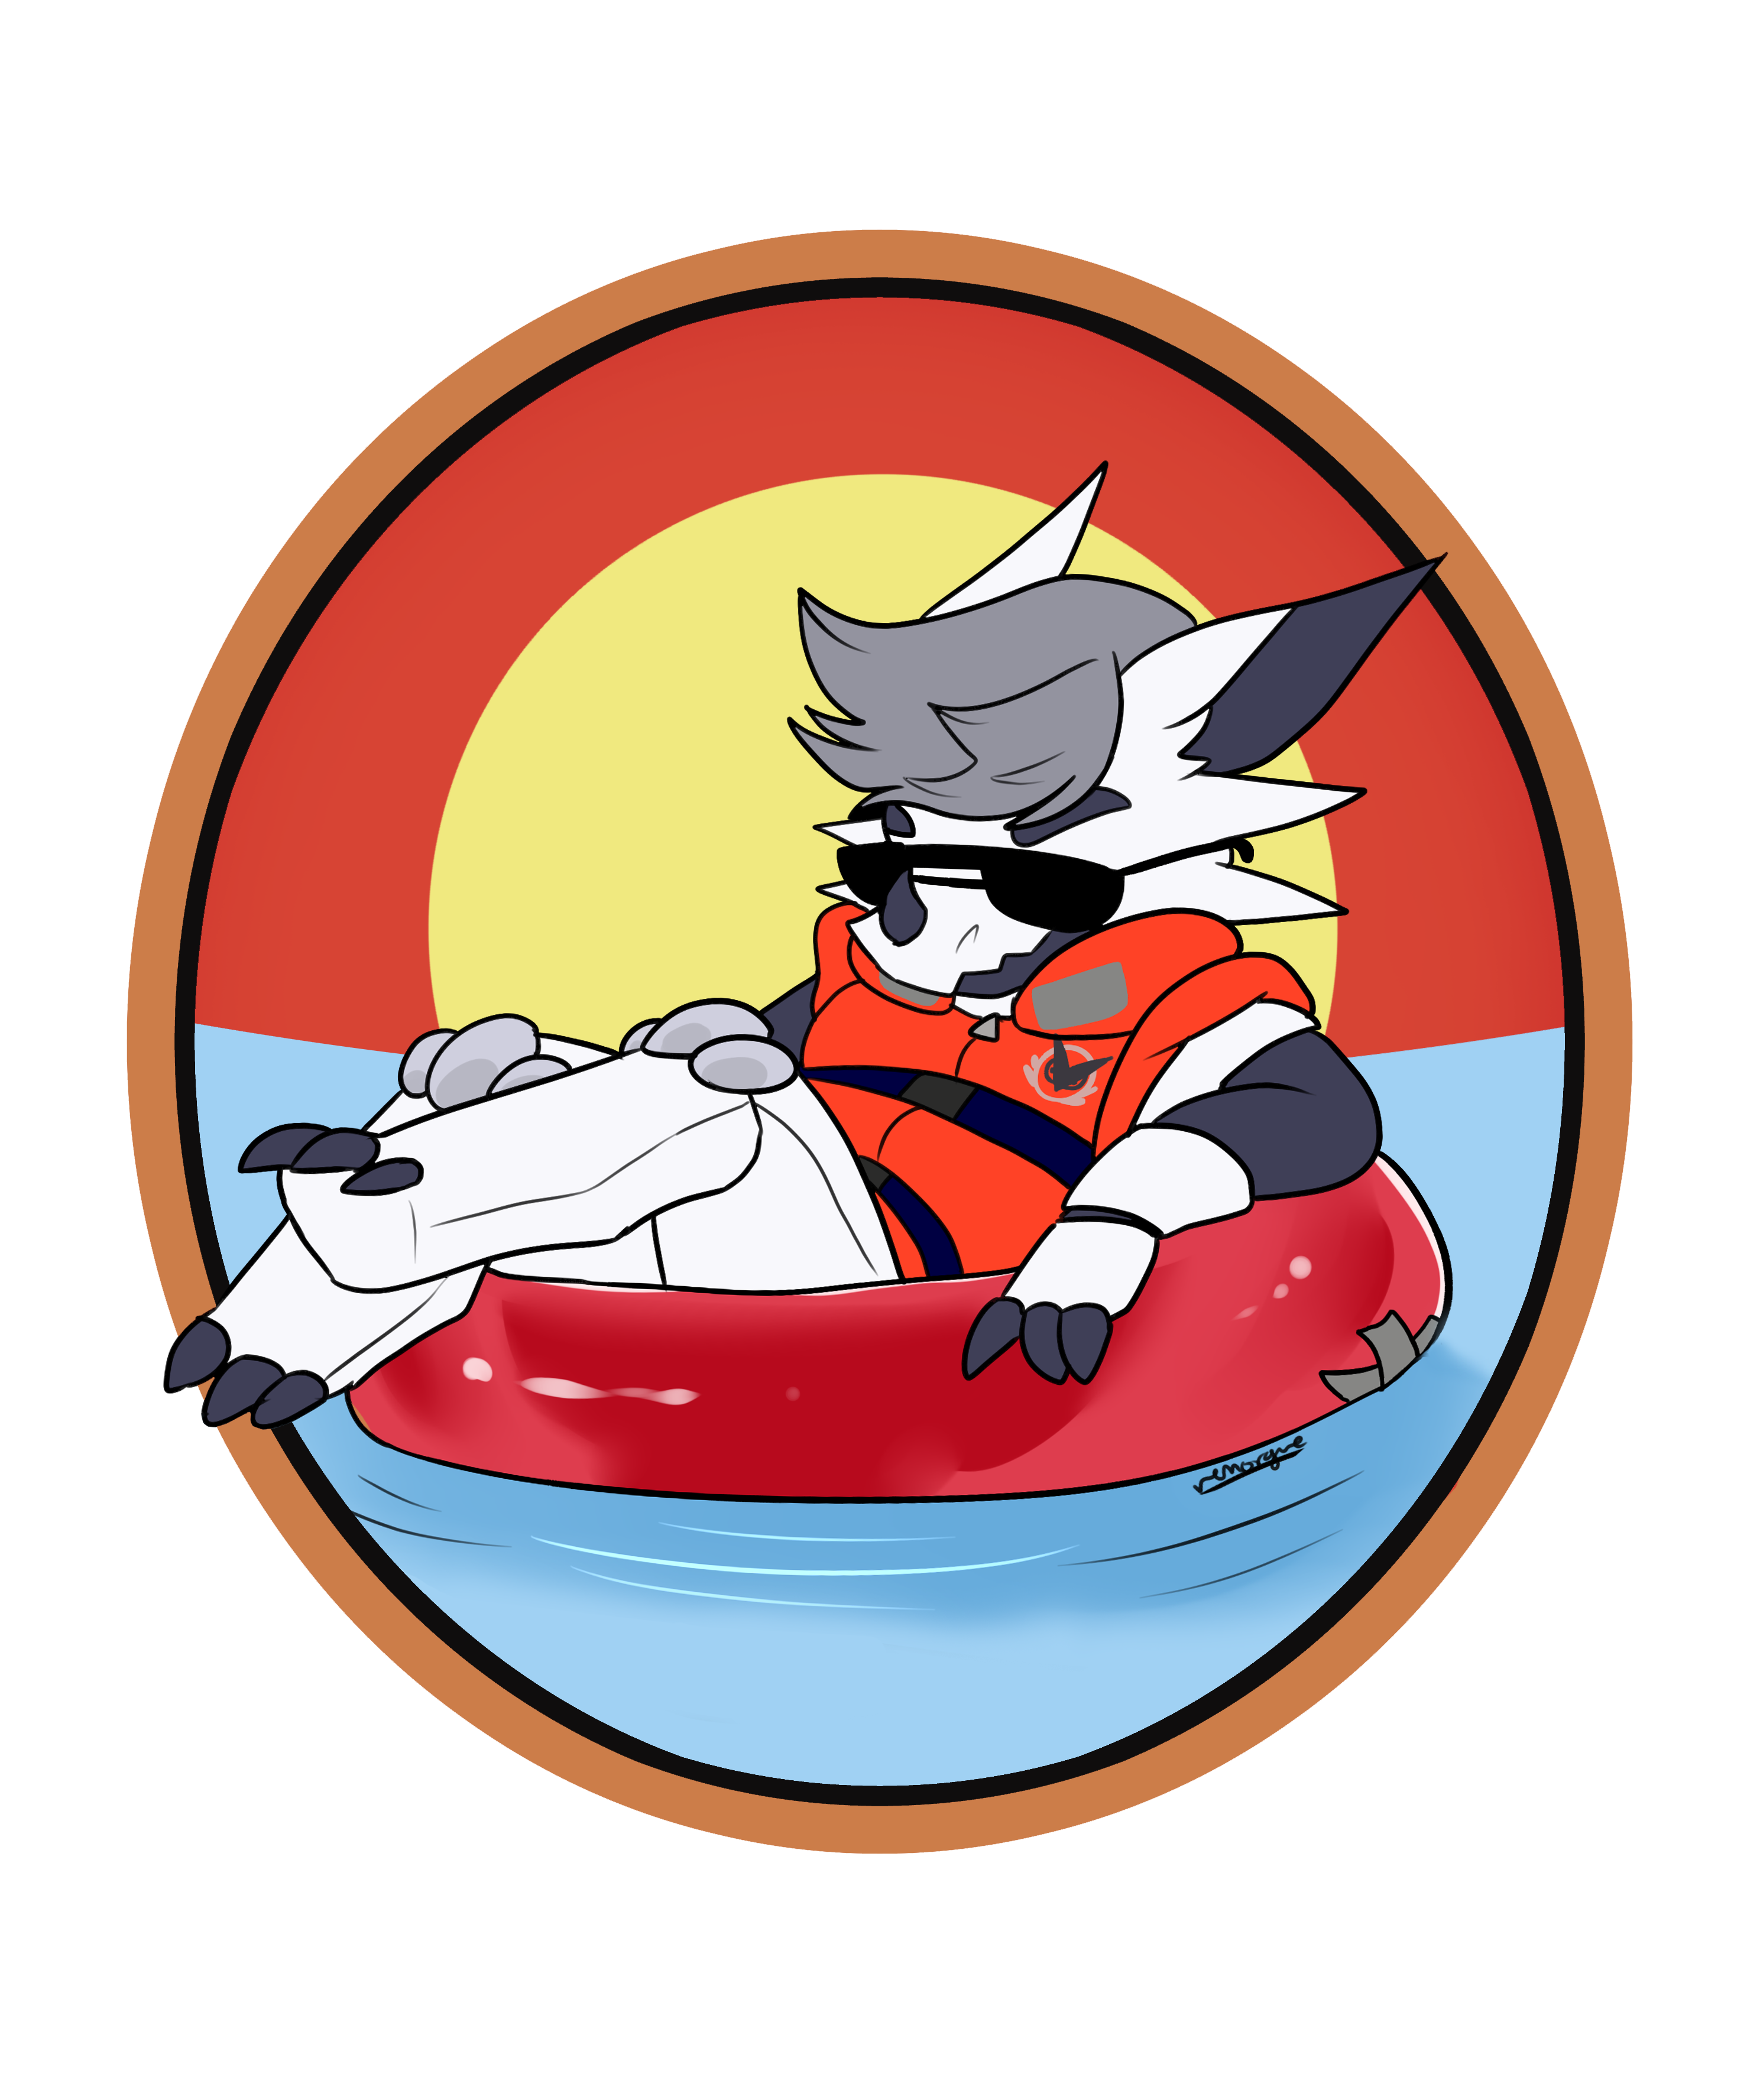 Life Jacket Squad - Life Jacket Squad (3300x4200)